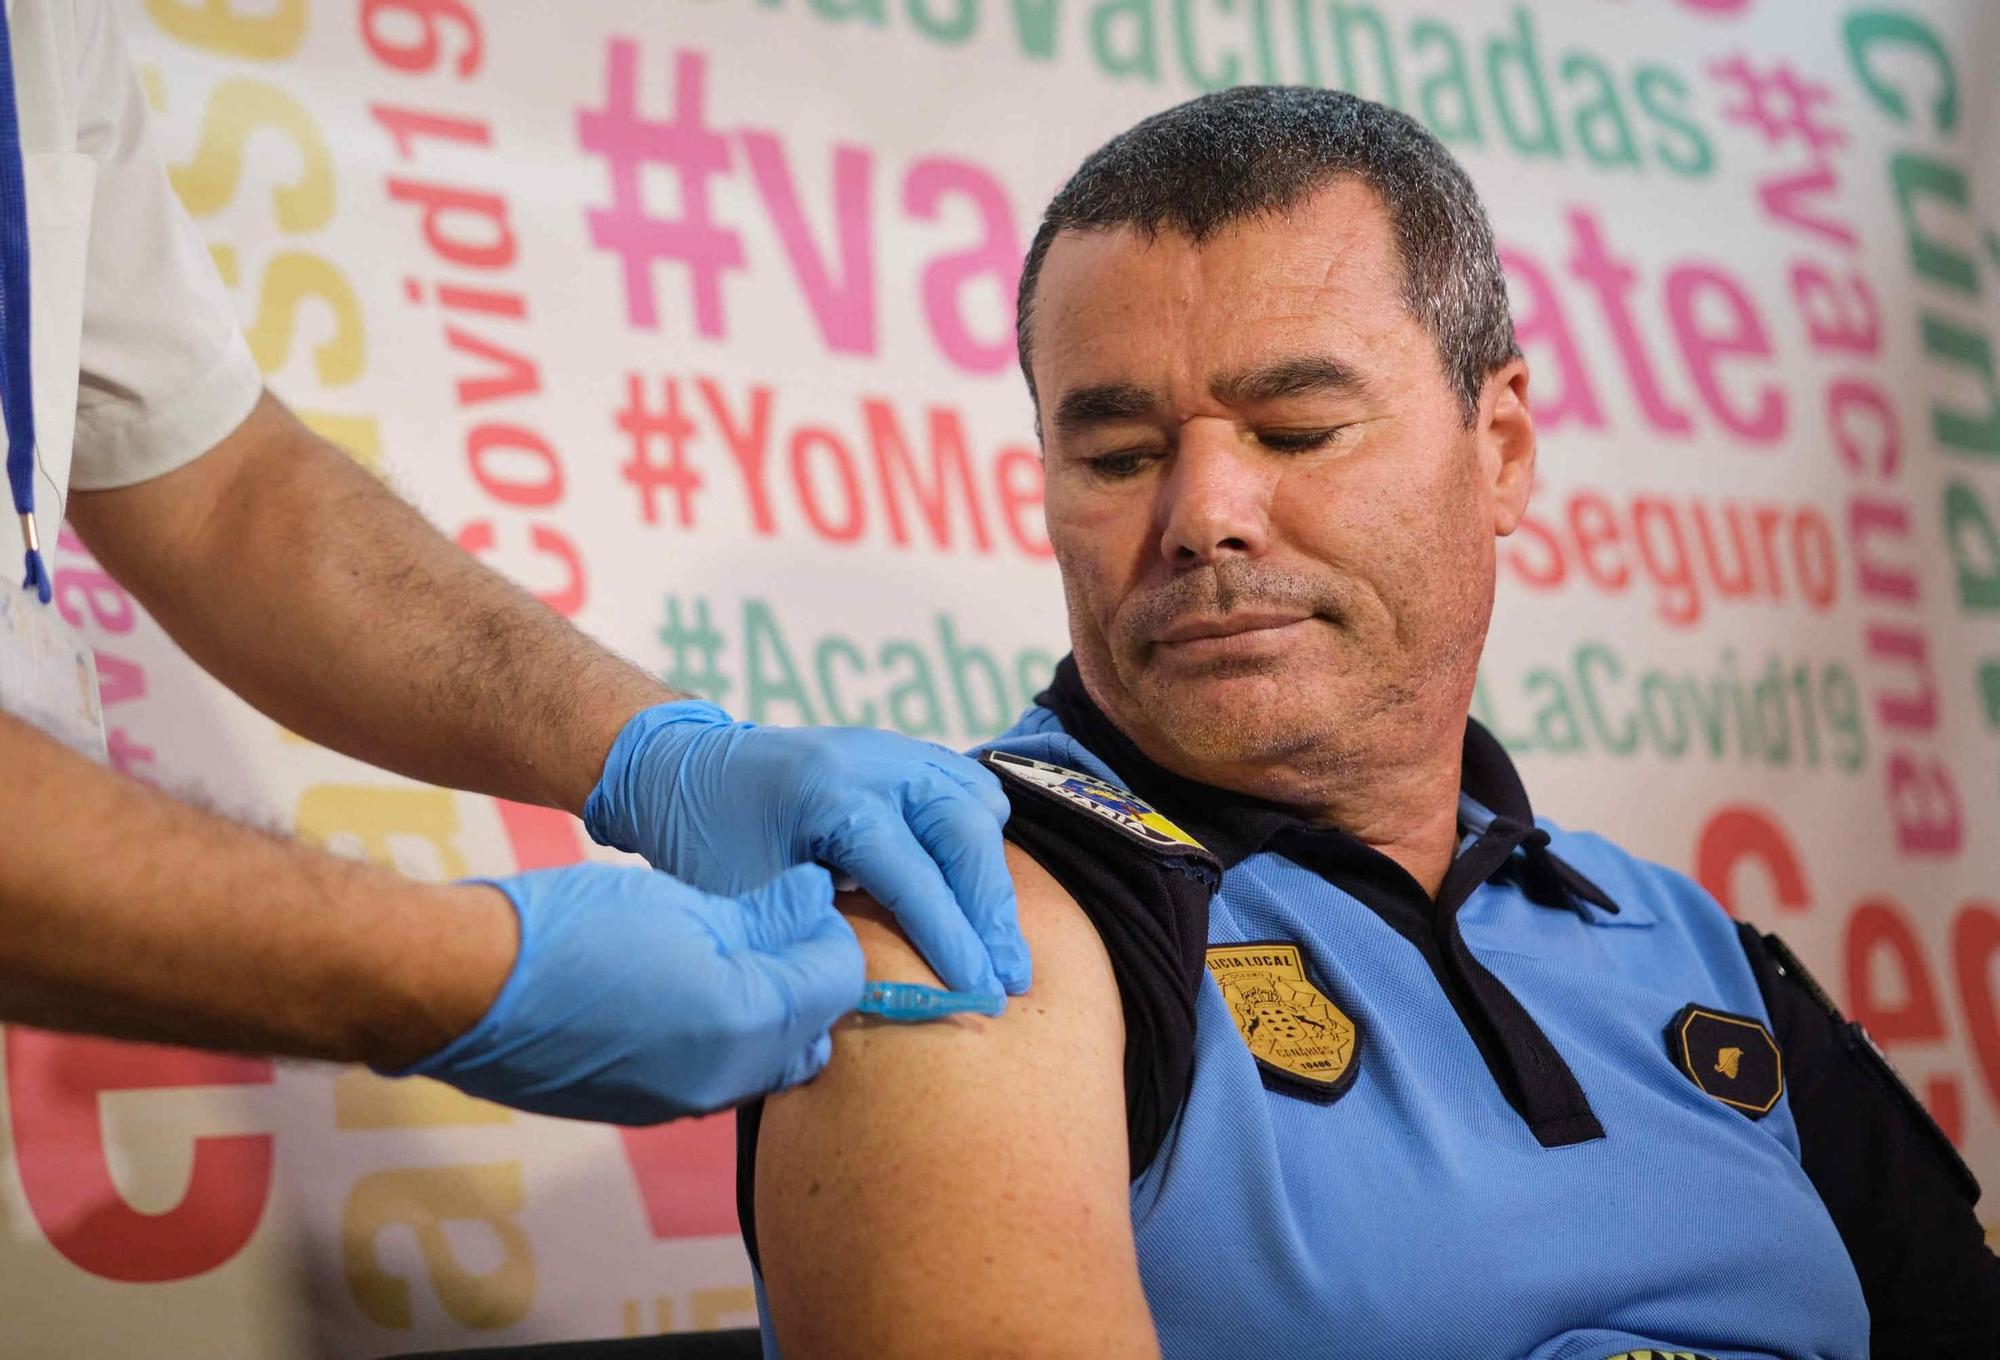 Canarias inicia la vacuación frente a la gripe